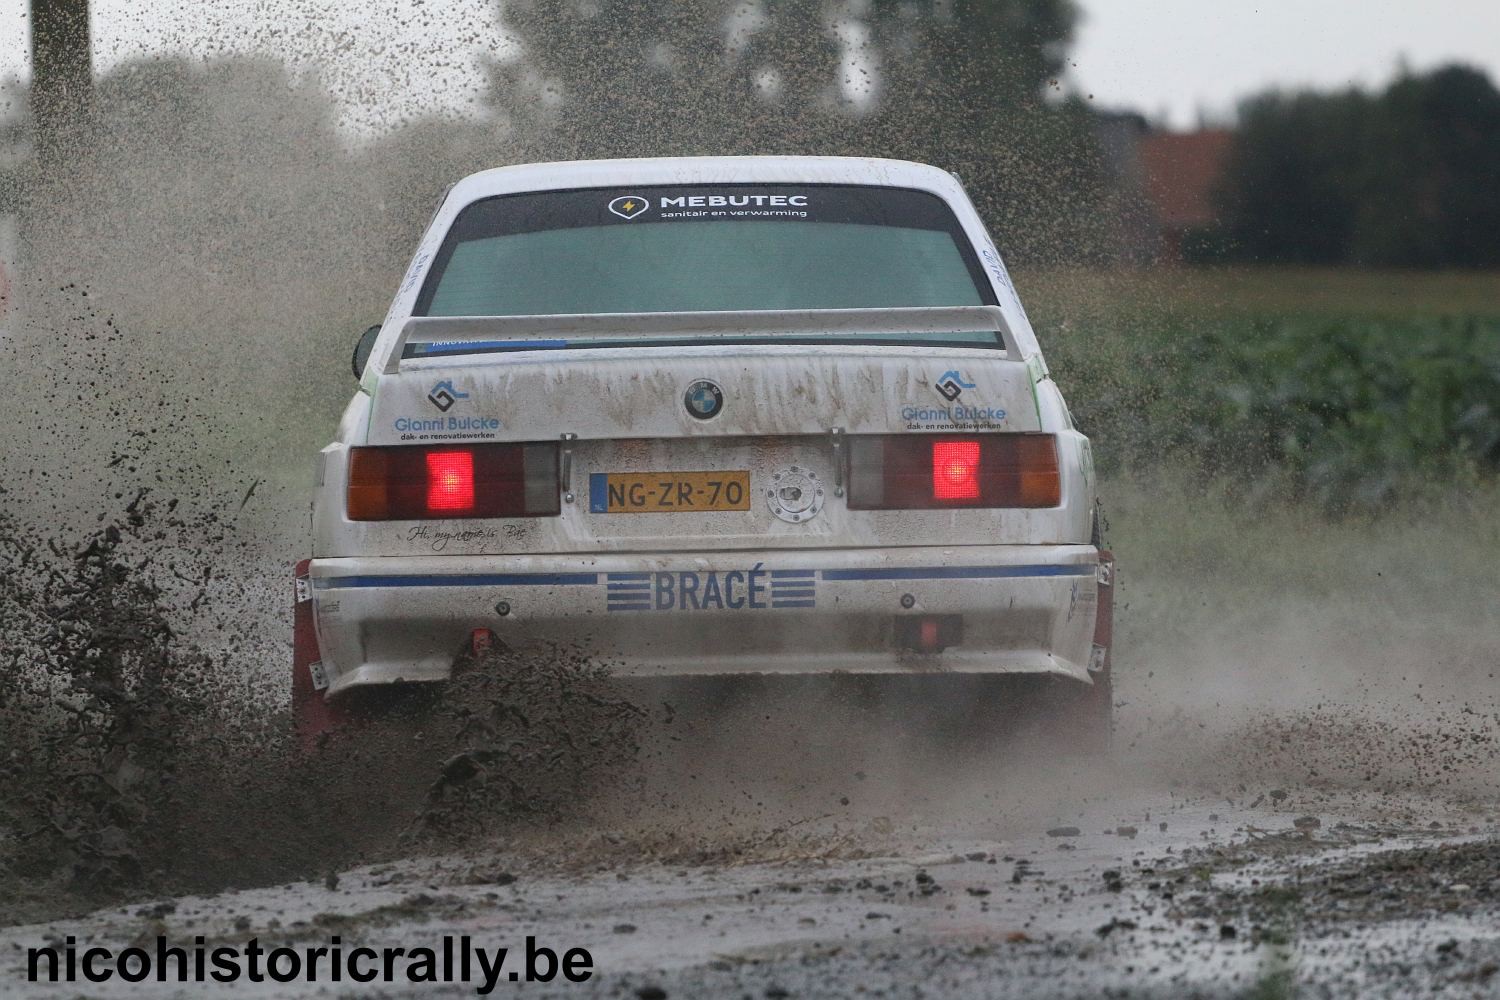 Wedstrijdverslag Cedriek Merlevede en Thijs Ozeel in de Rally van de Monteberg.